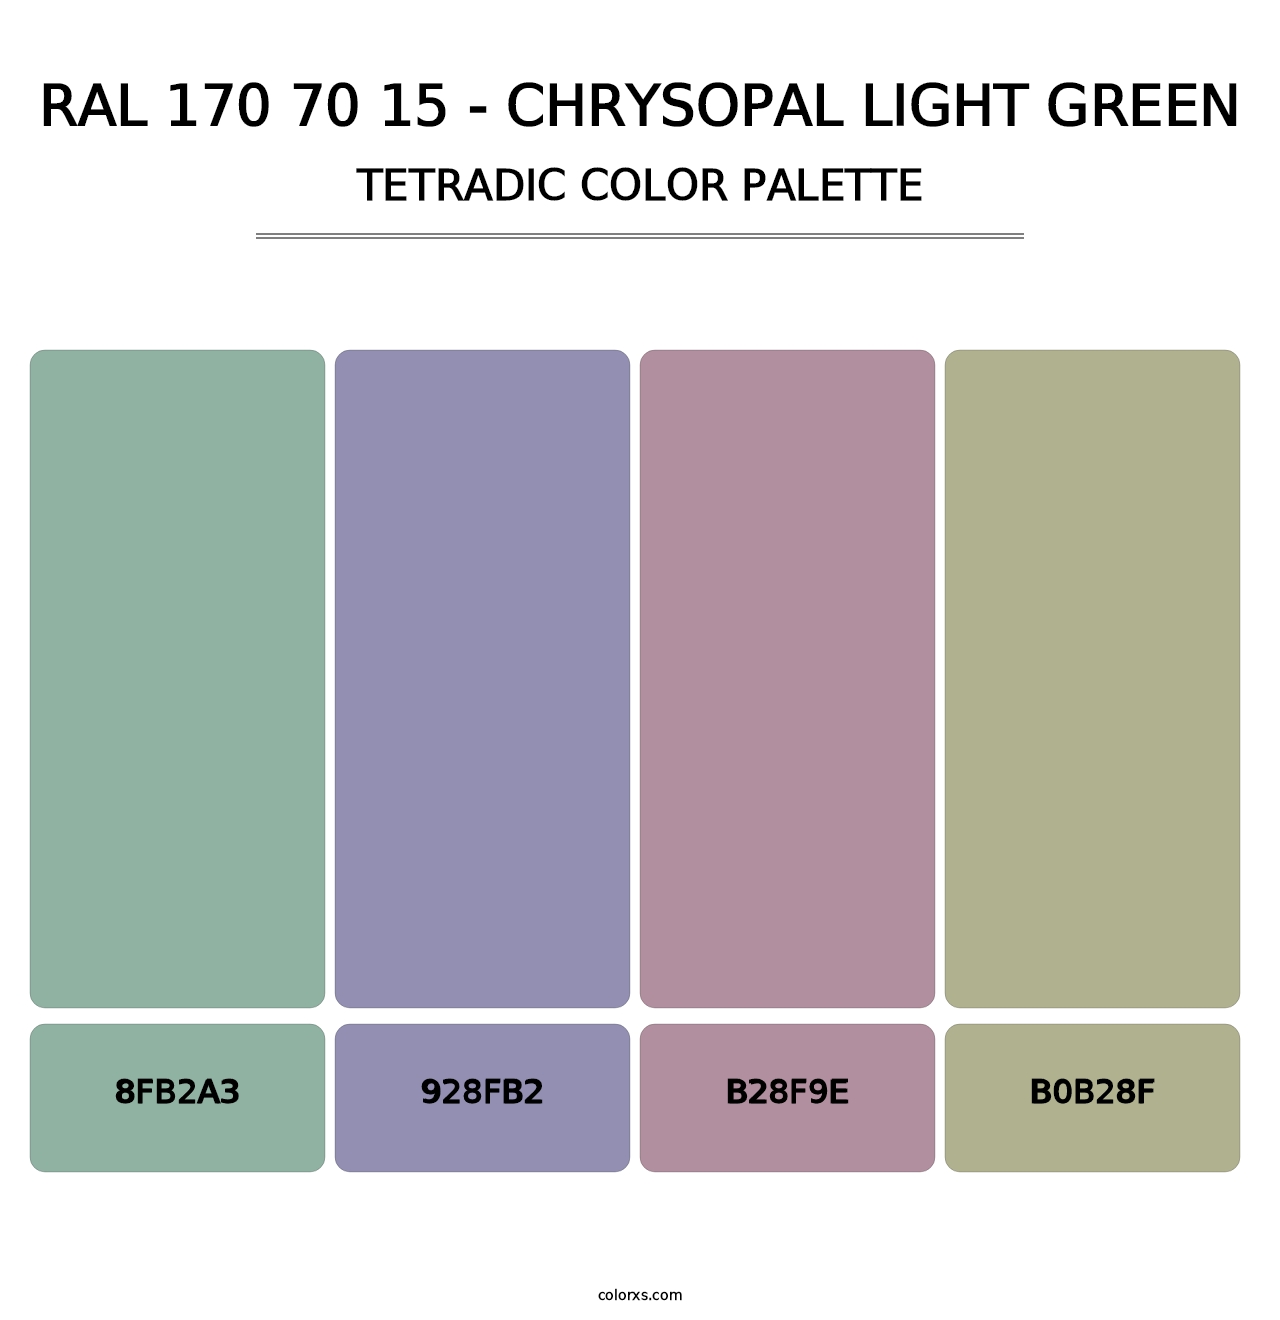 RAL 170 70 15 - Chrysopal Light Green - Tetradic Color Palette